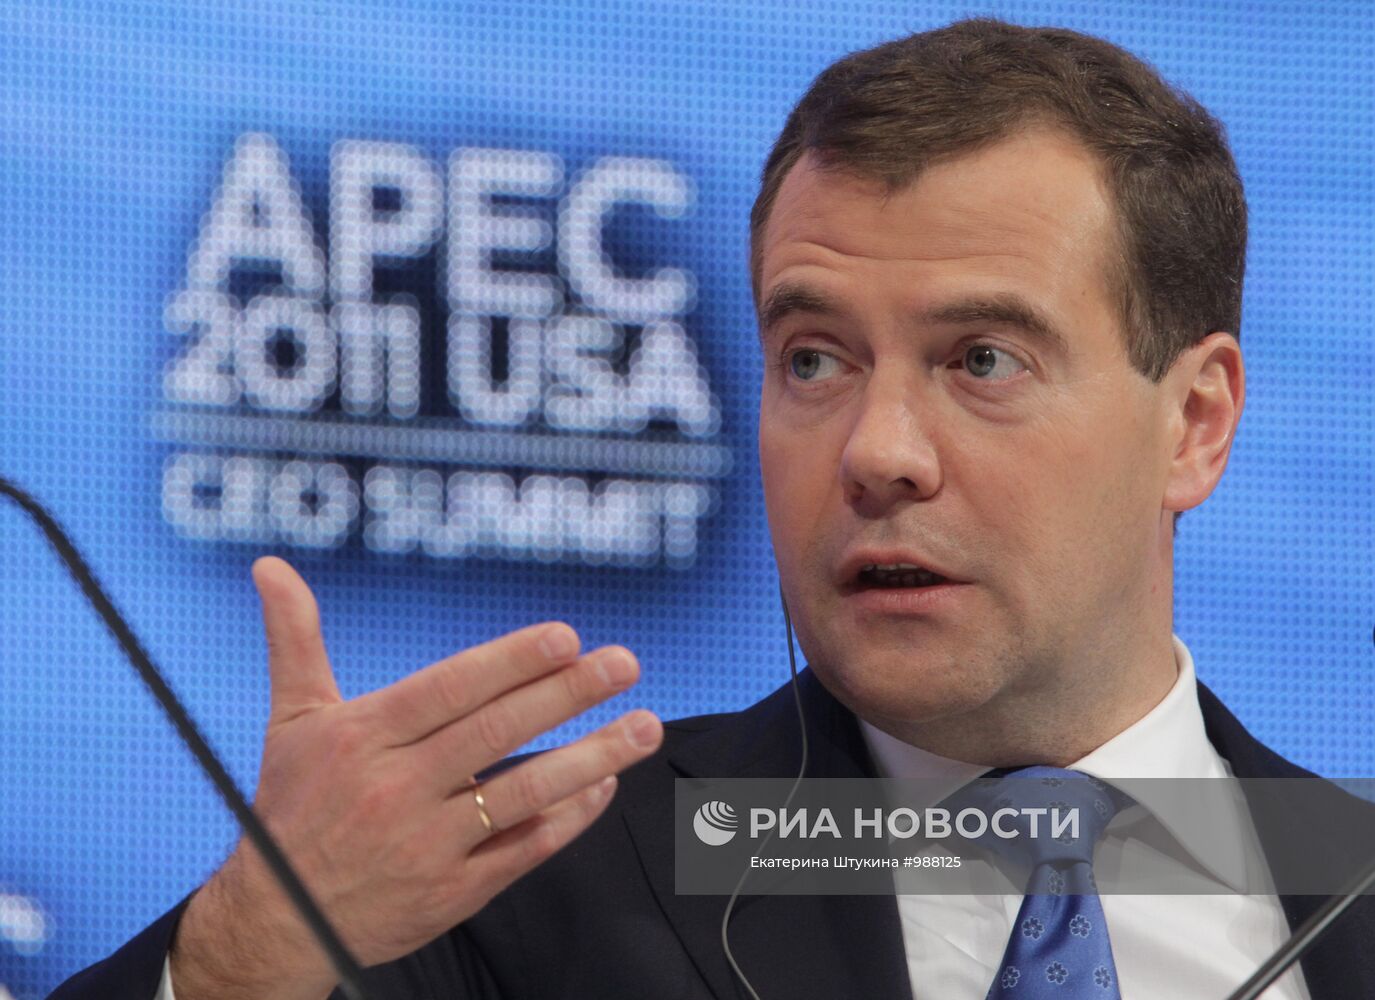 Д.Медведев принимает участие в саммите АТЭС